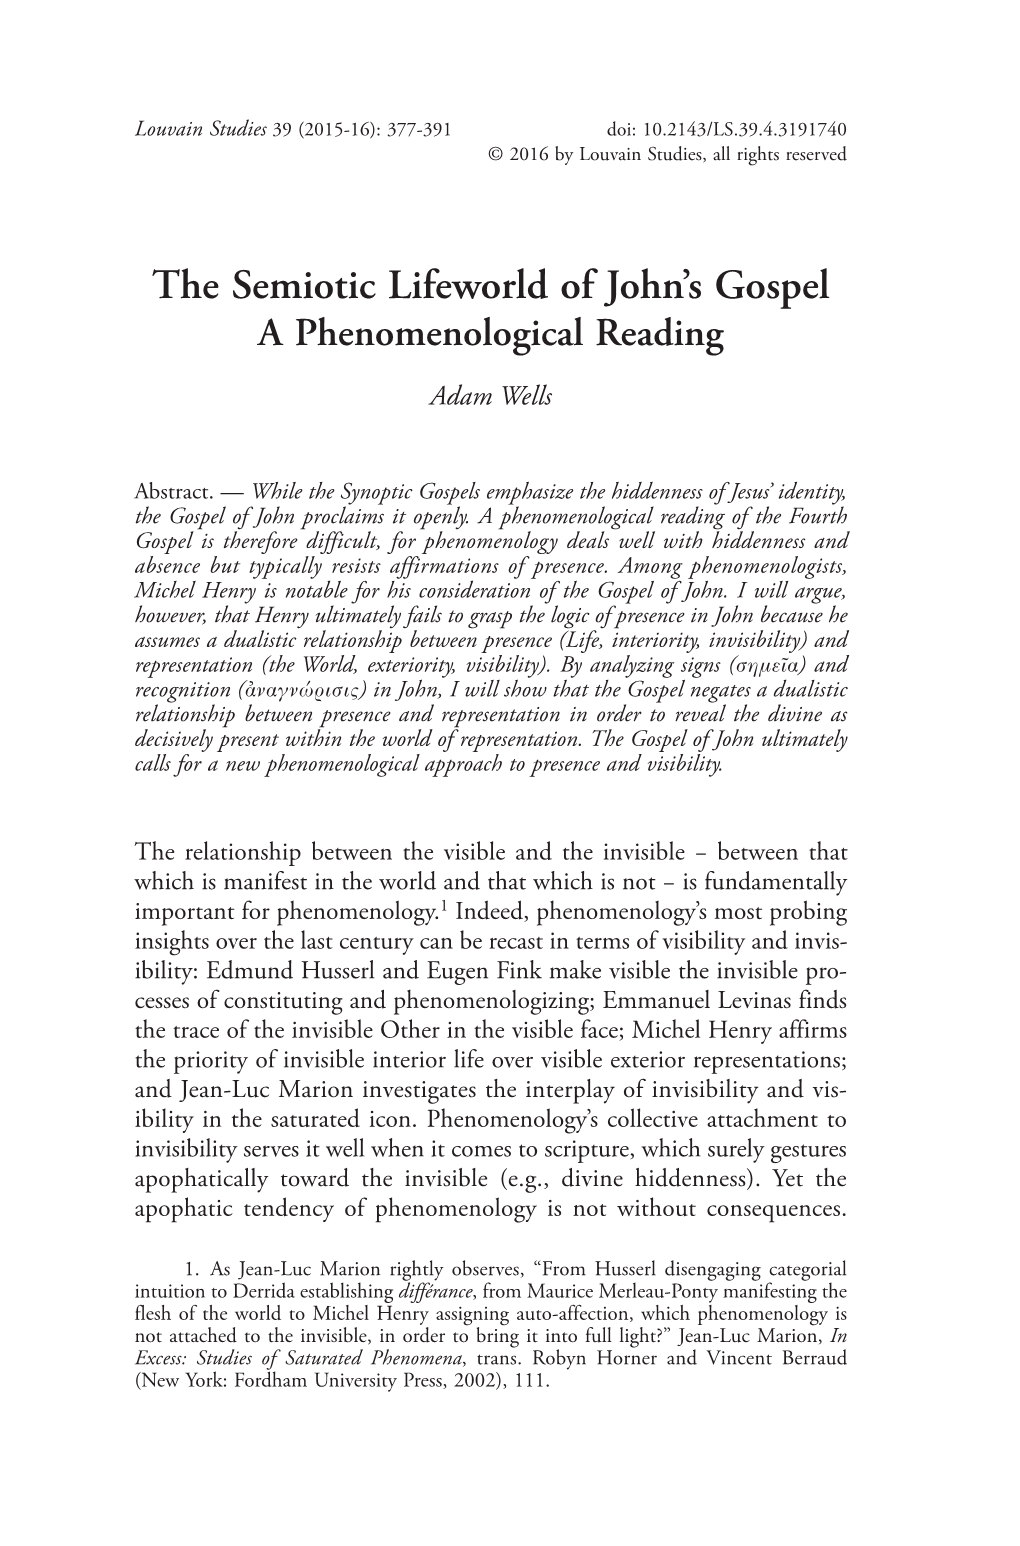 The Semiotic Lifeworld of John's Gospel